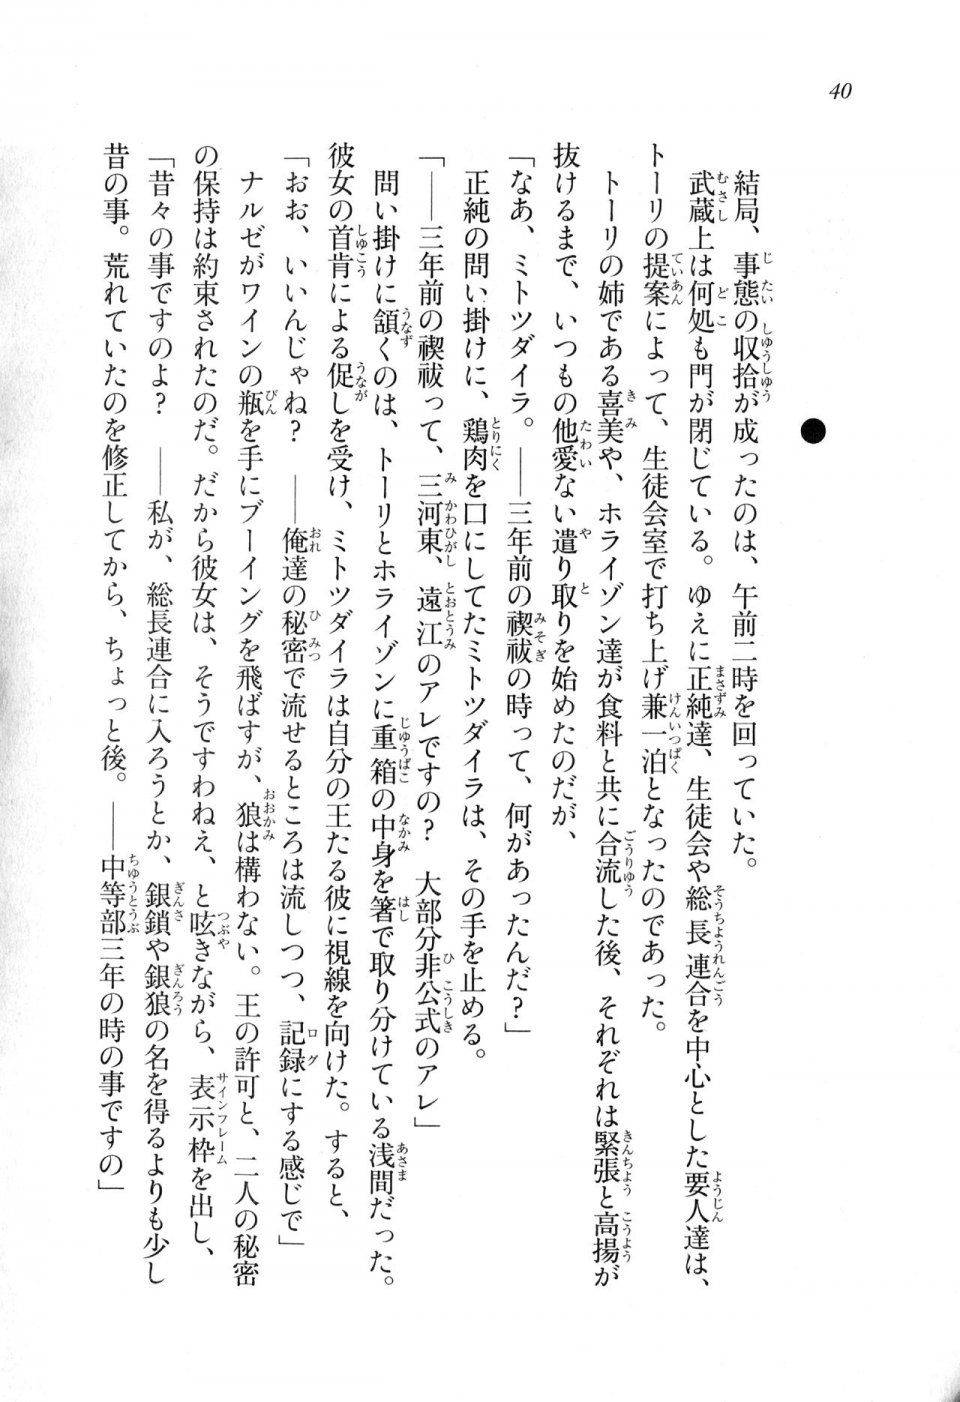 Kyoukai Senjou no Horizon LN Sidestory Vol 1 - Photo #38